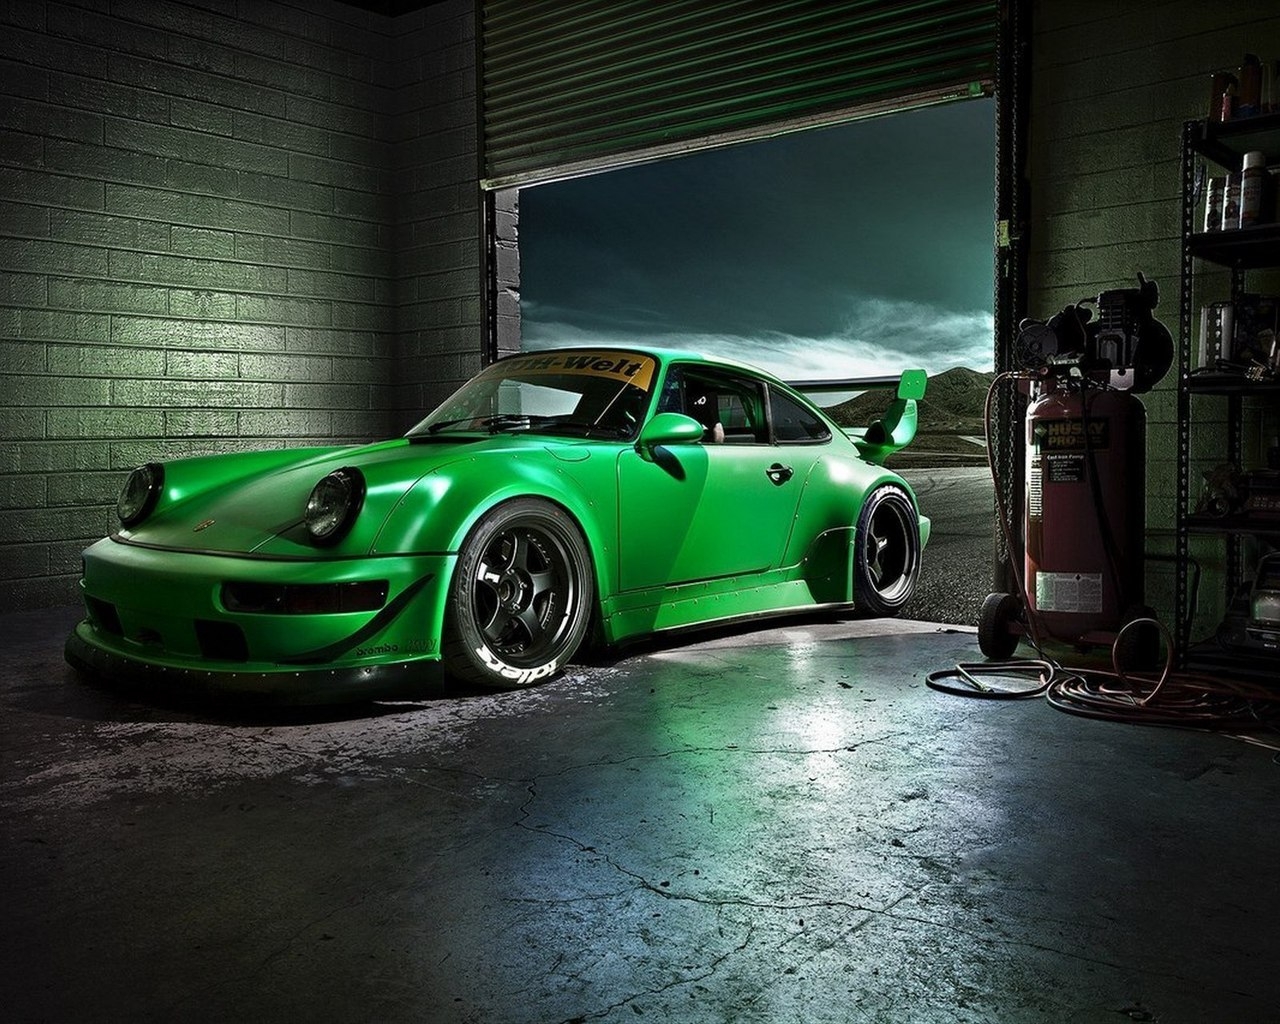 Green Porsche Carrera for 1280 x 1024 resolution